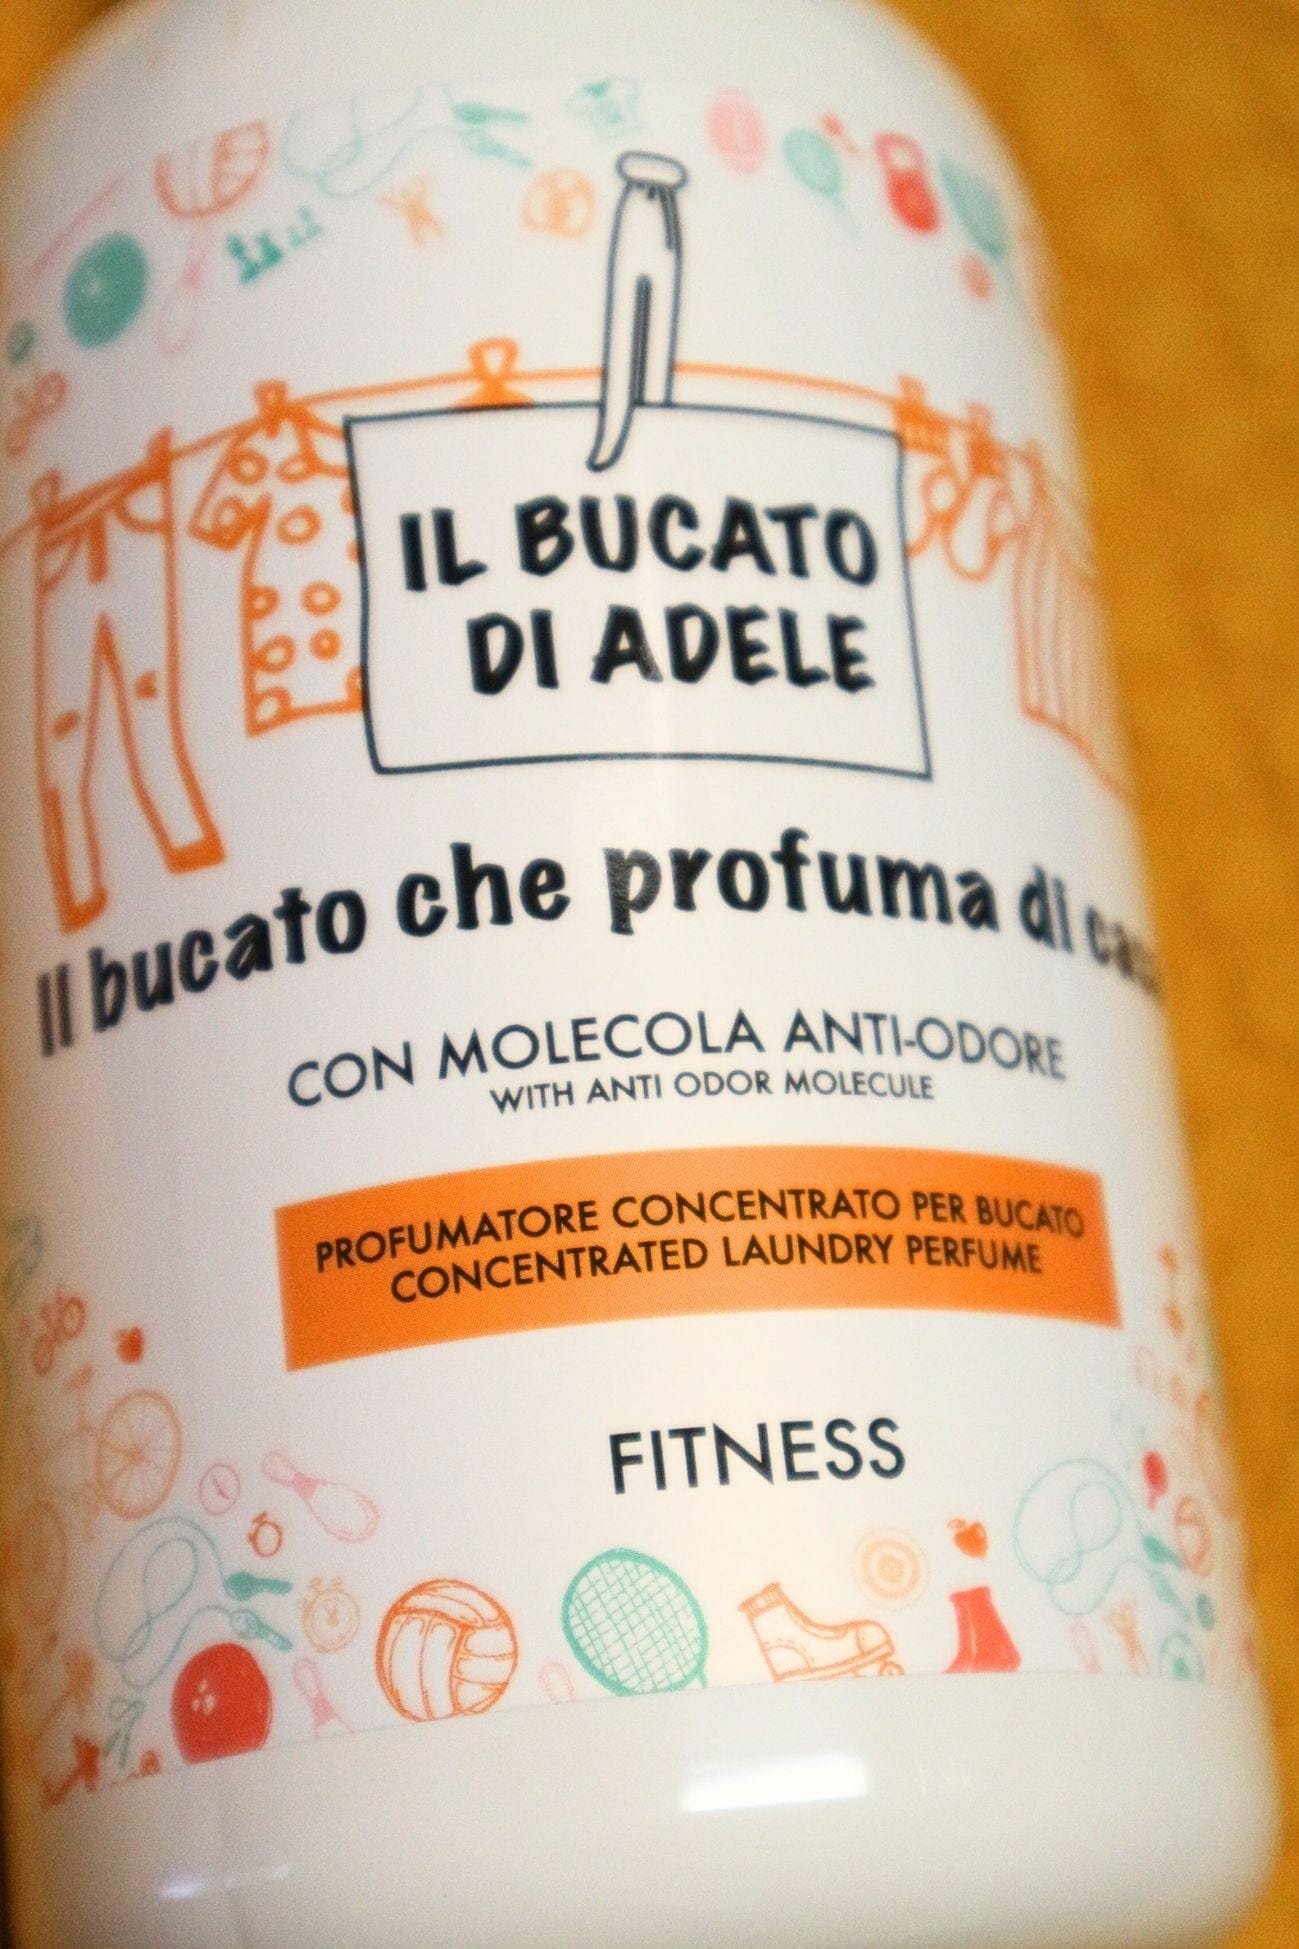 Il Bucato di Adele Fitness Fitness - Profumatore per bucato fruttato antiodore - note solari e frutti rossi | Il Bucato di Adele